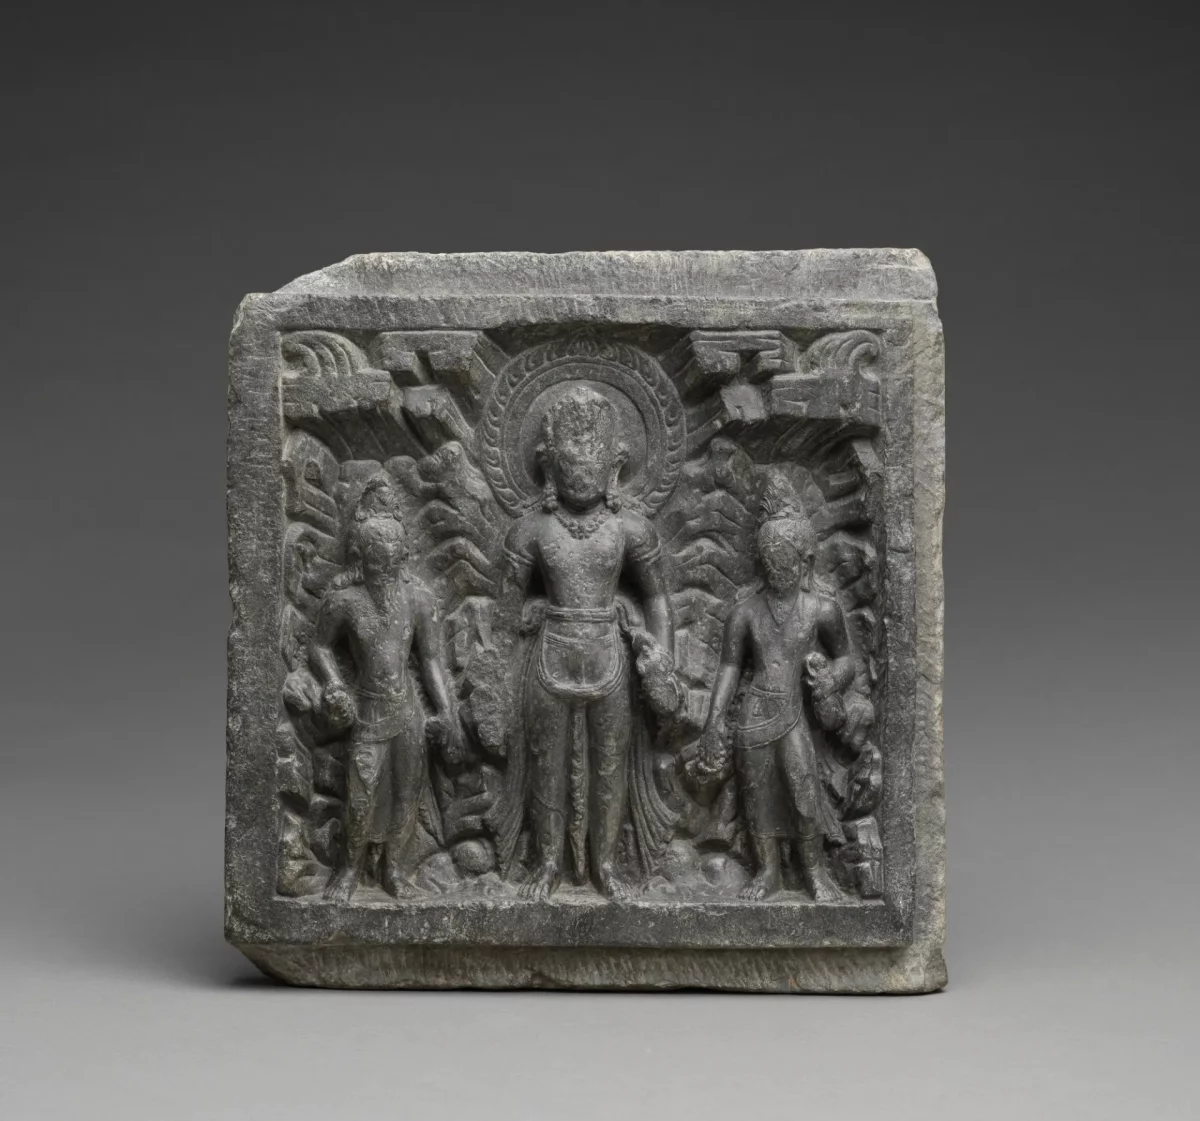 met, shiva, nepal, artefact, curatorial